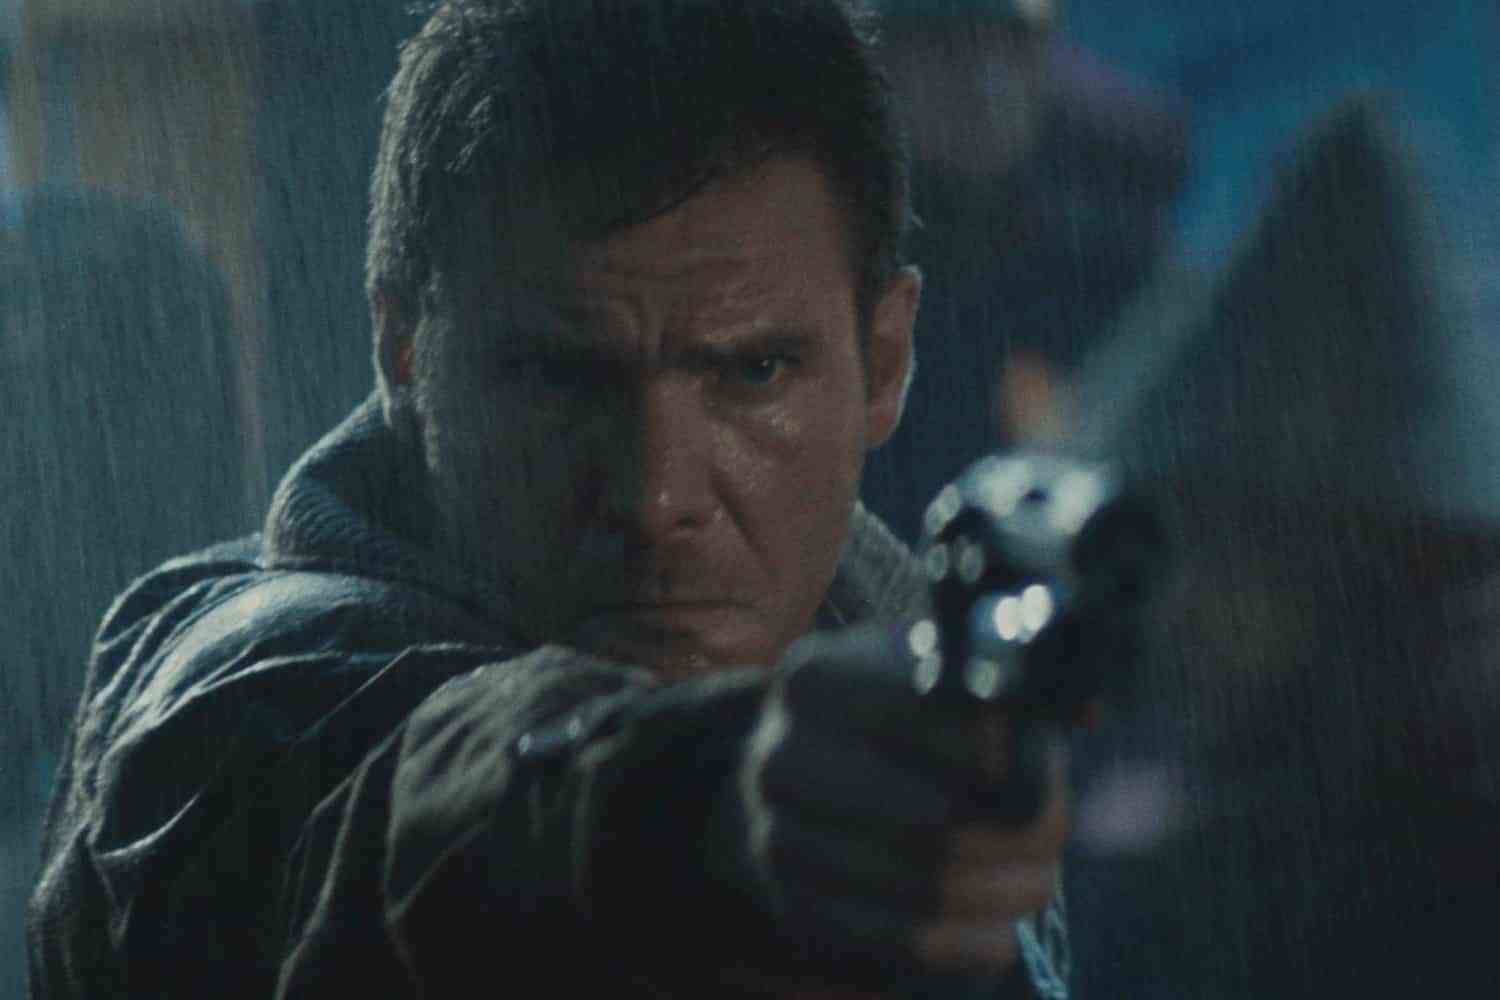 1982 landeten Blade Runner und The Thing in den Kinos, wurden aber später als kritische Meisterwerke zurückgefordert, aber kann das im modernen Internetzeitalter immer noch passieren, mit sofortiger Kritik und Widerwillen, Fehler zuzugeben